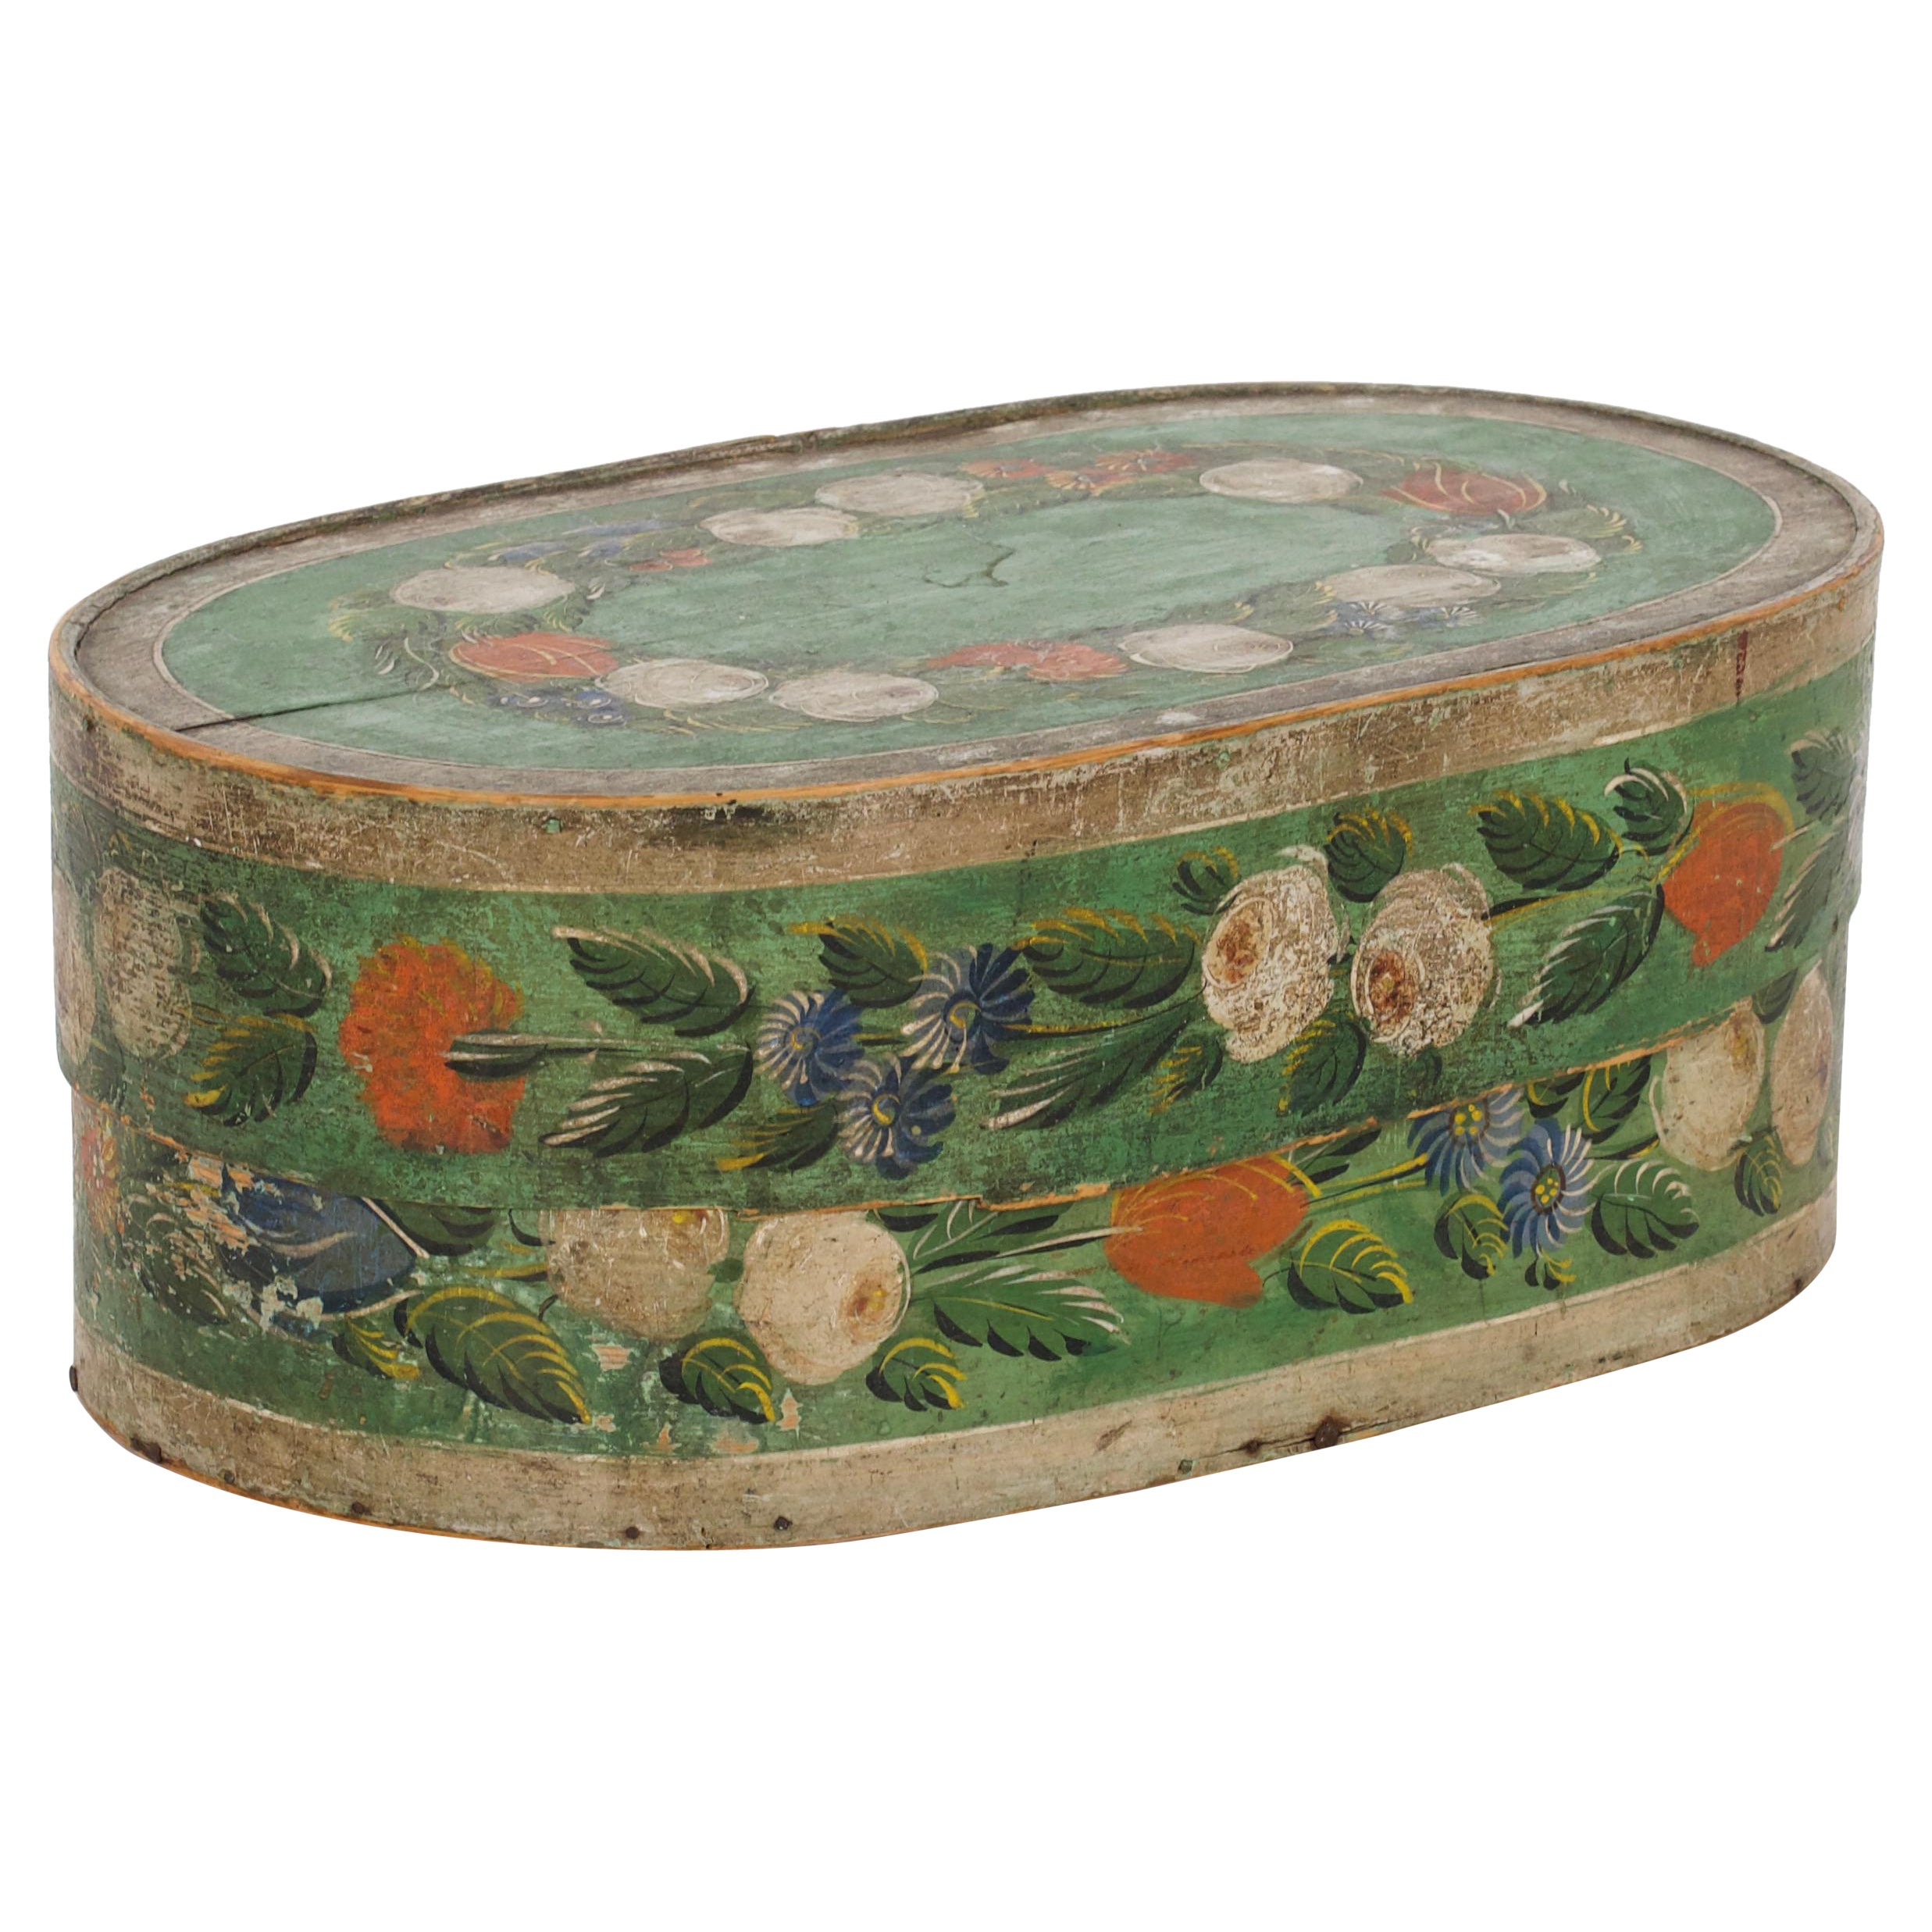 Swedish box, circa 1800.